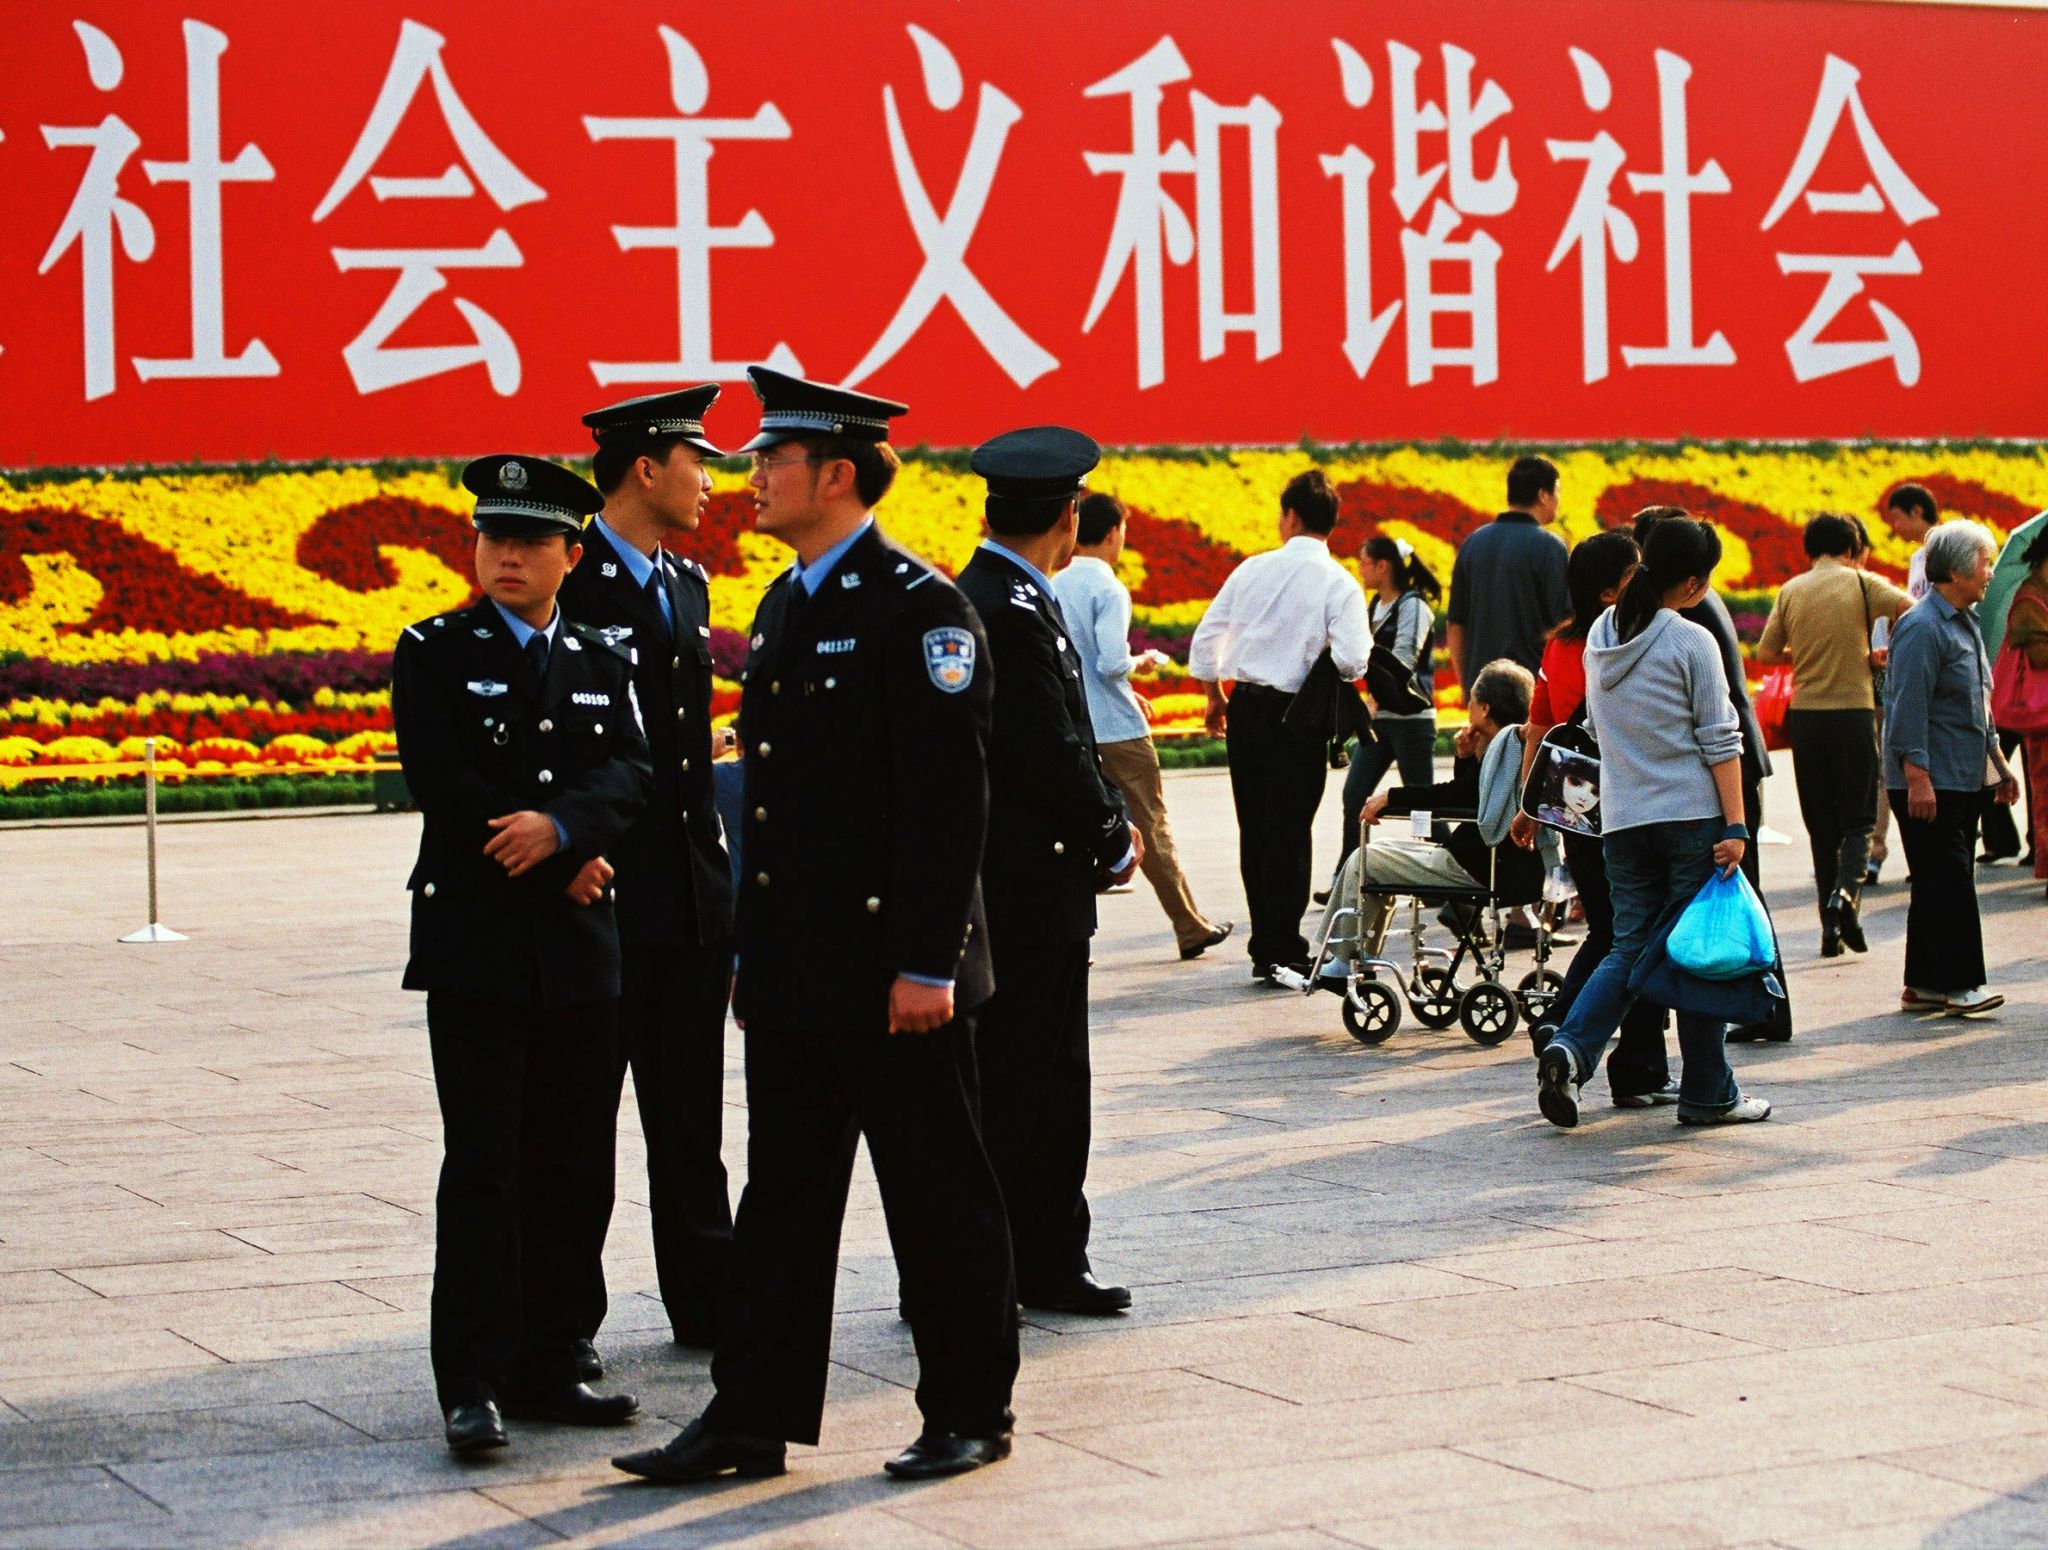 Policja patrolująca Plac Tiananmen. październik 2005 r. napis w tle mówi: "Socjalizm, harmonijne społeczeństwo".